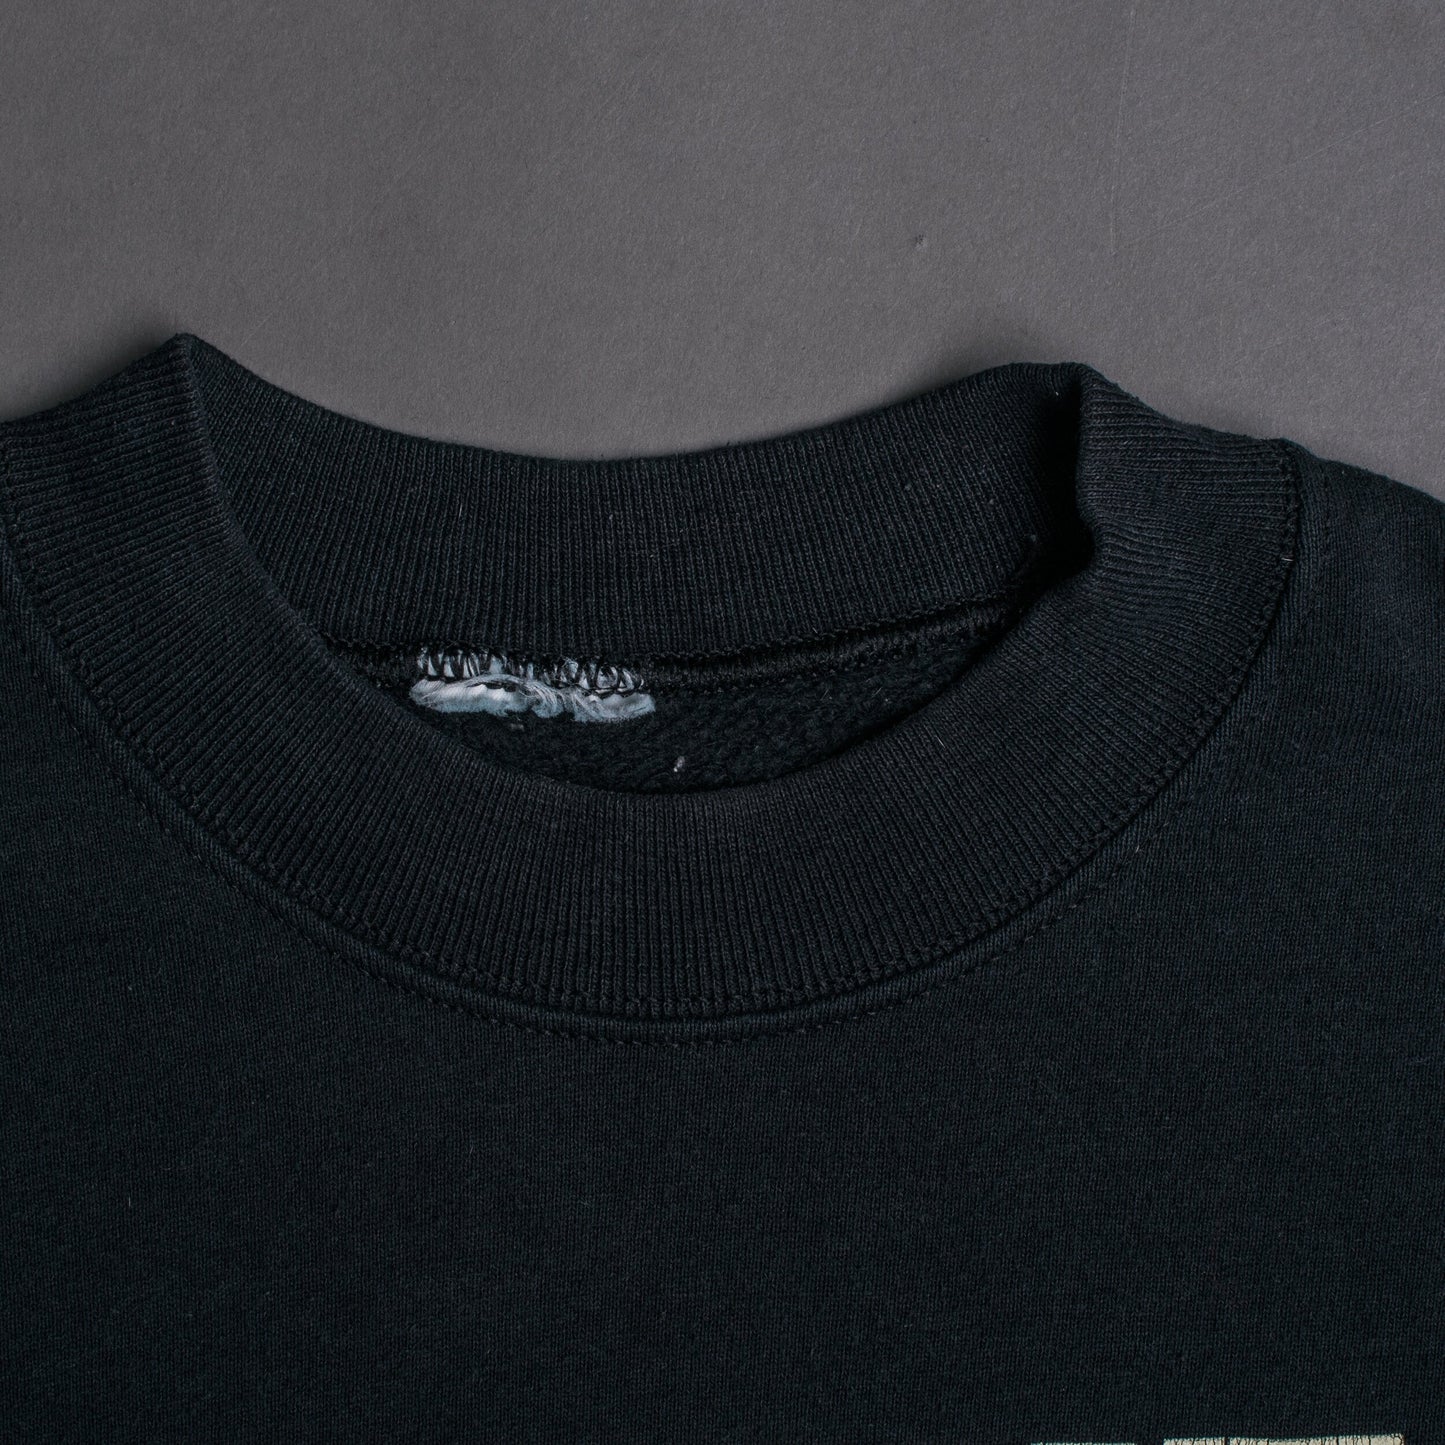 Vintage 90’s Warzone United Worldwide Sweatshirt